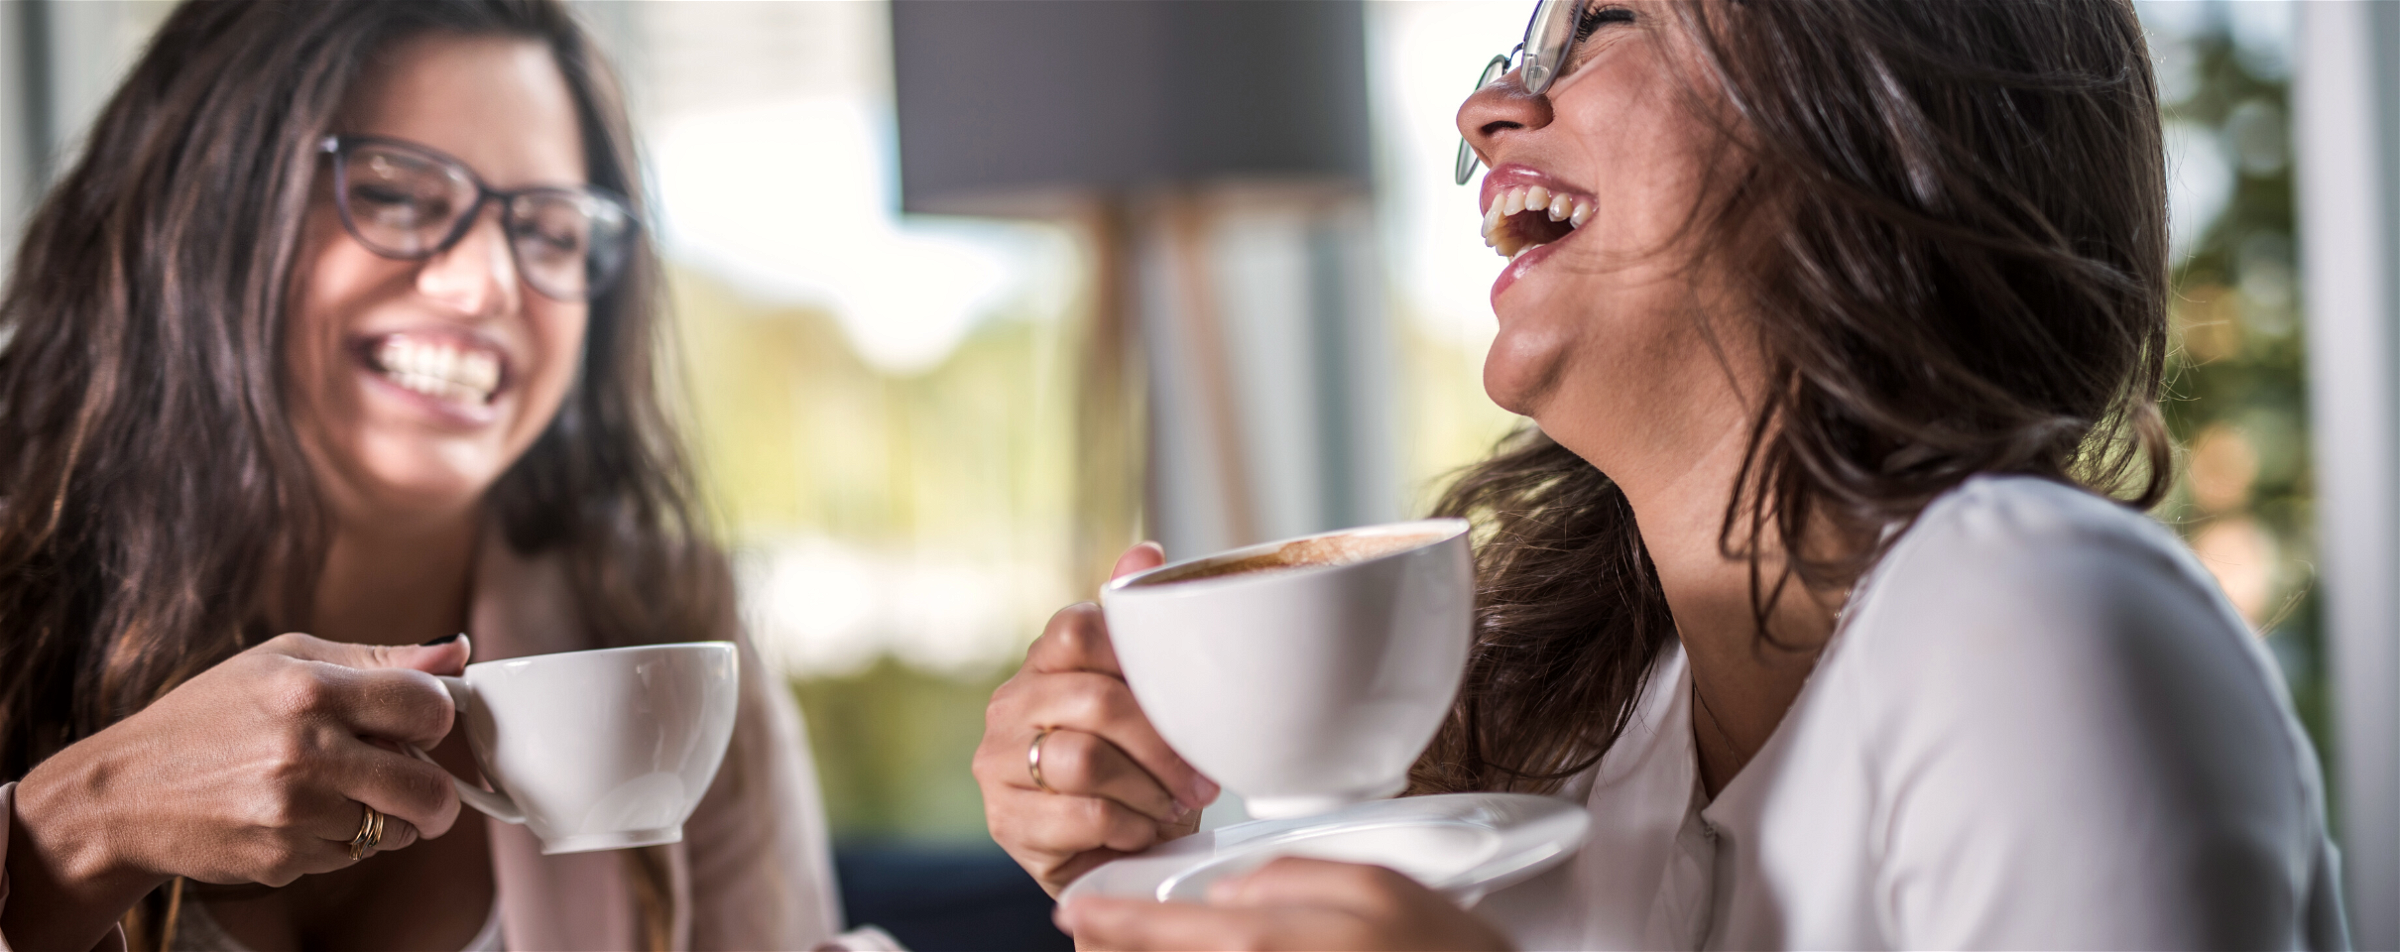 Lachende vrouwen met een lekkere kop koffie.